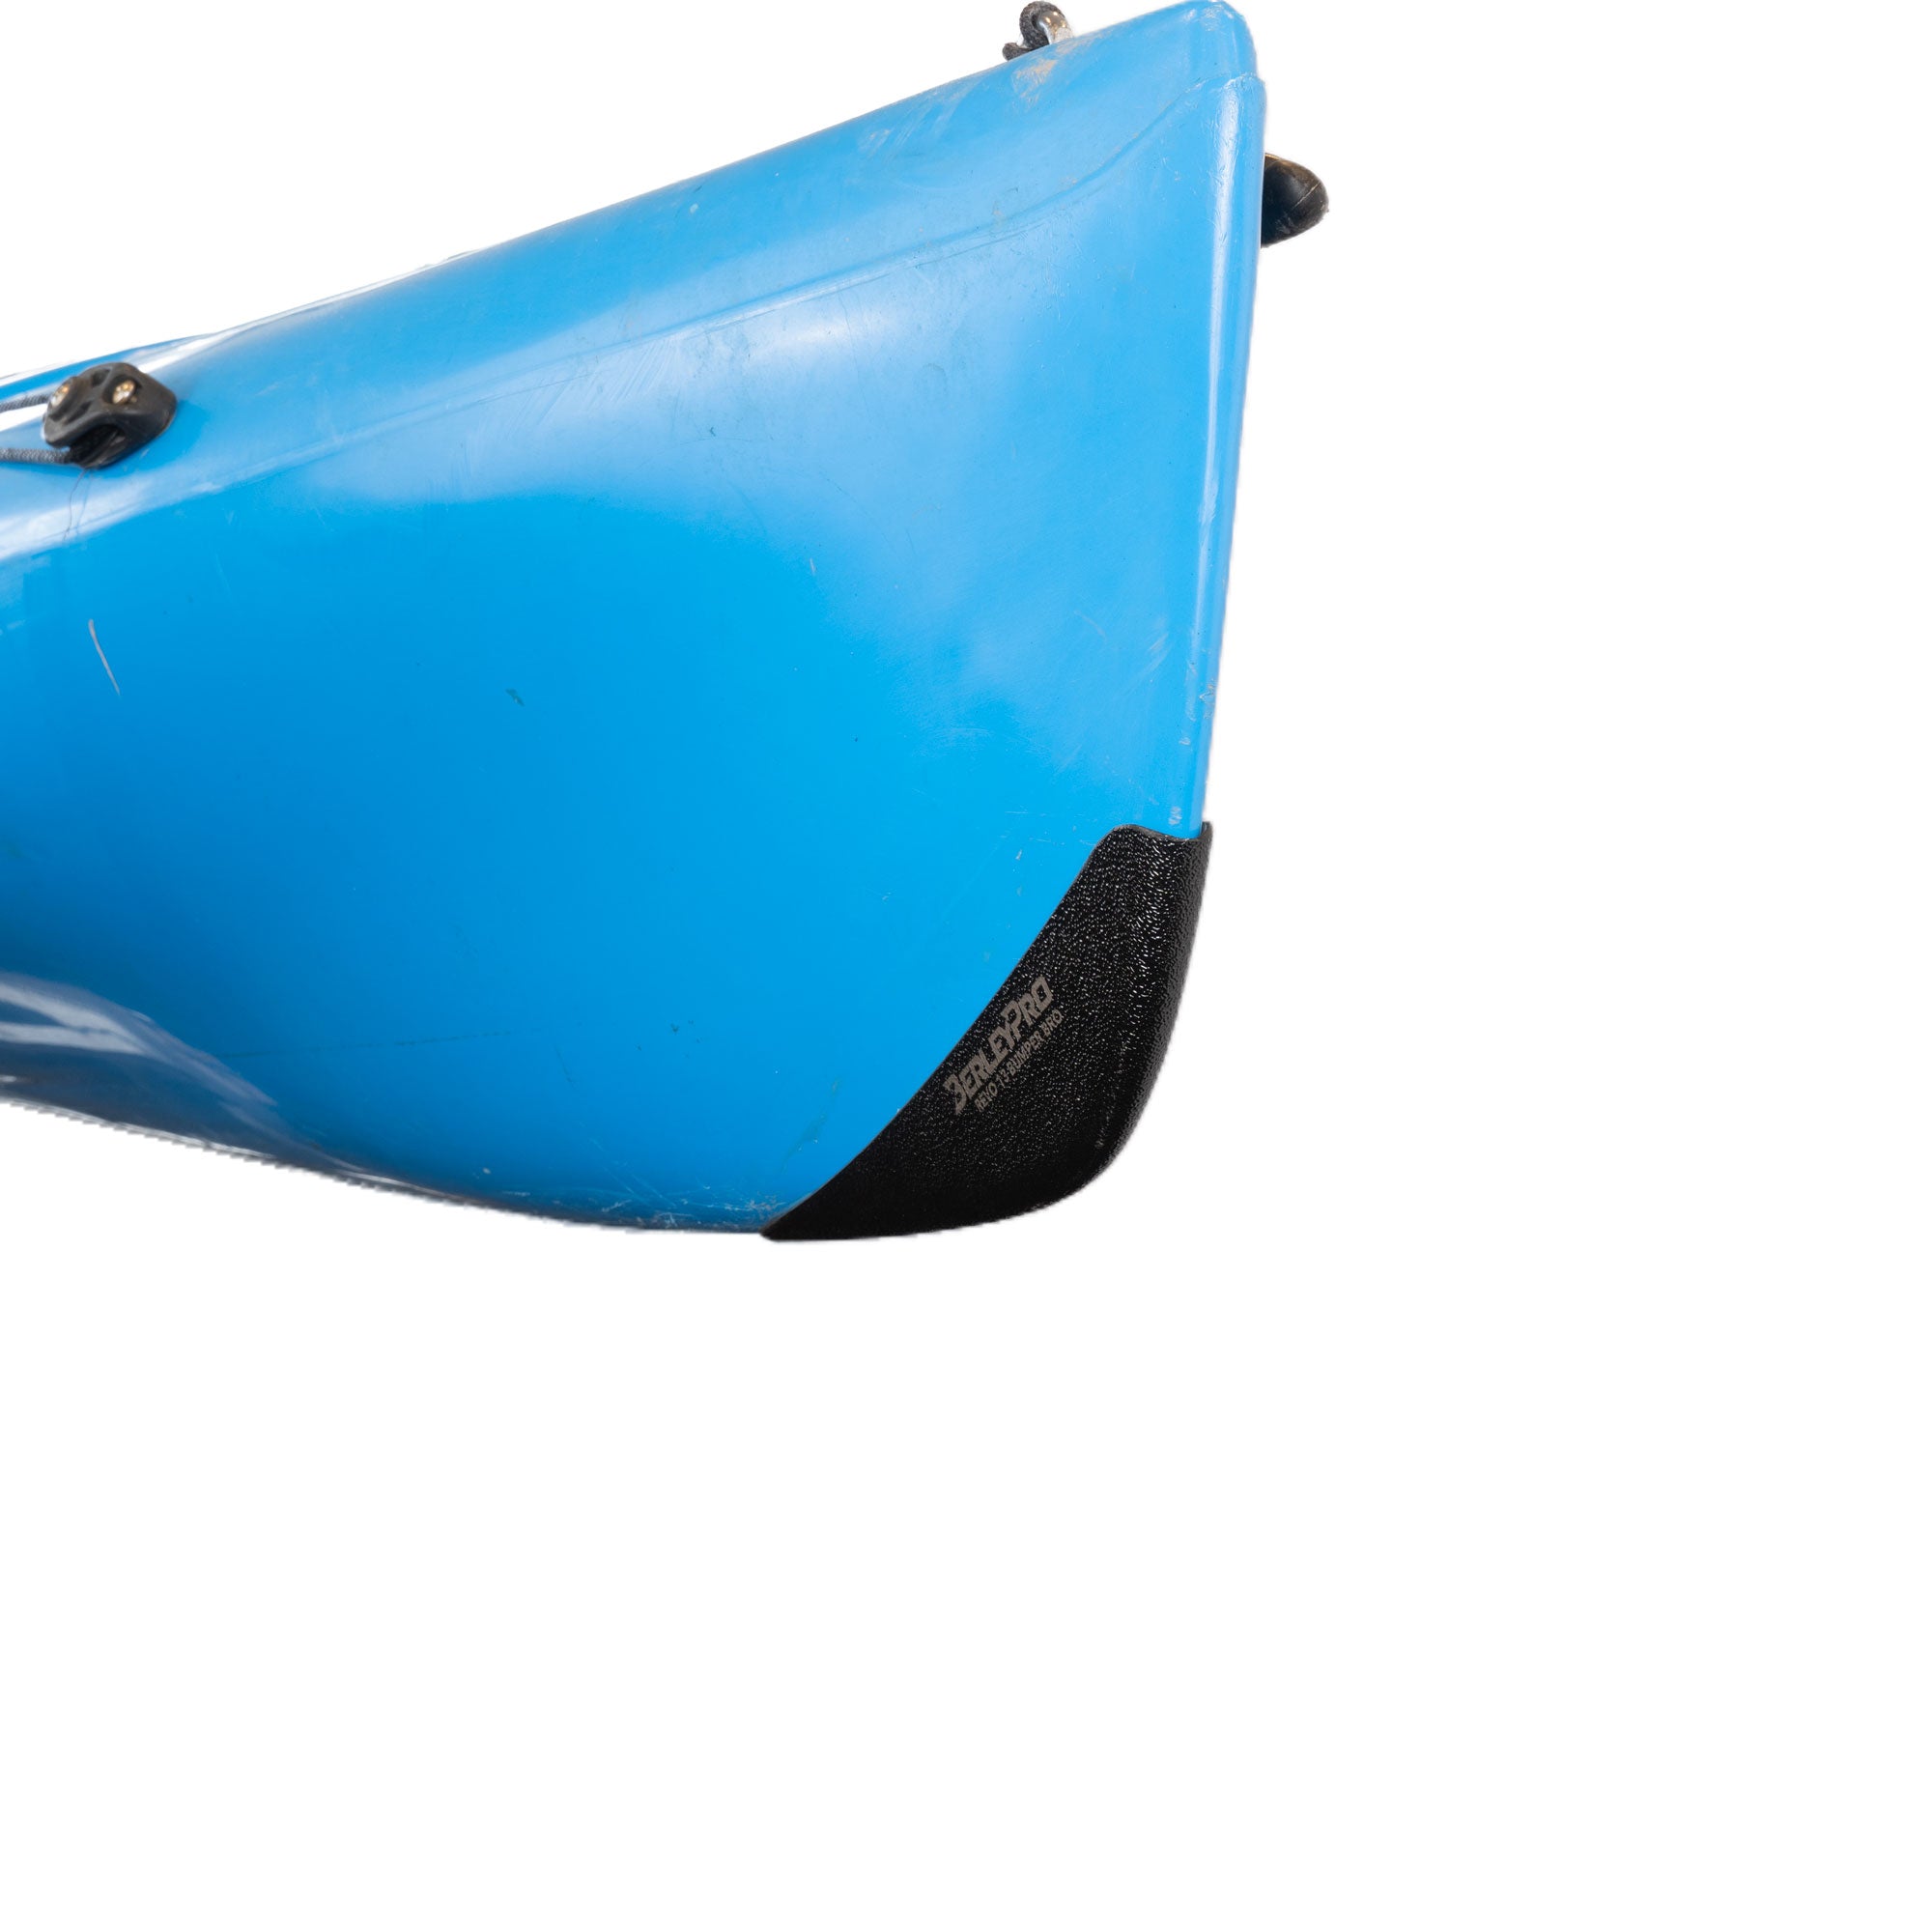 BerleyPro Bumper Bro Kayak Keel Guard Hobie Revo 13 BP410103 Fitted 2 sku: